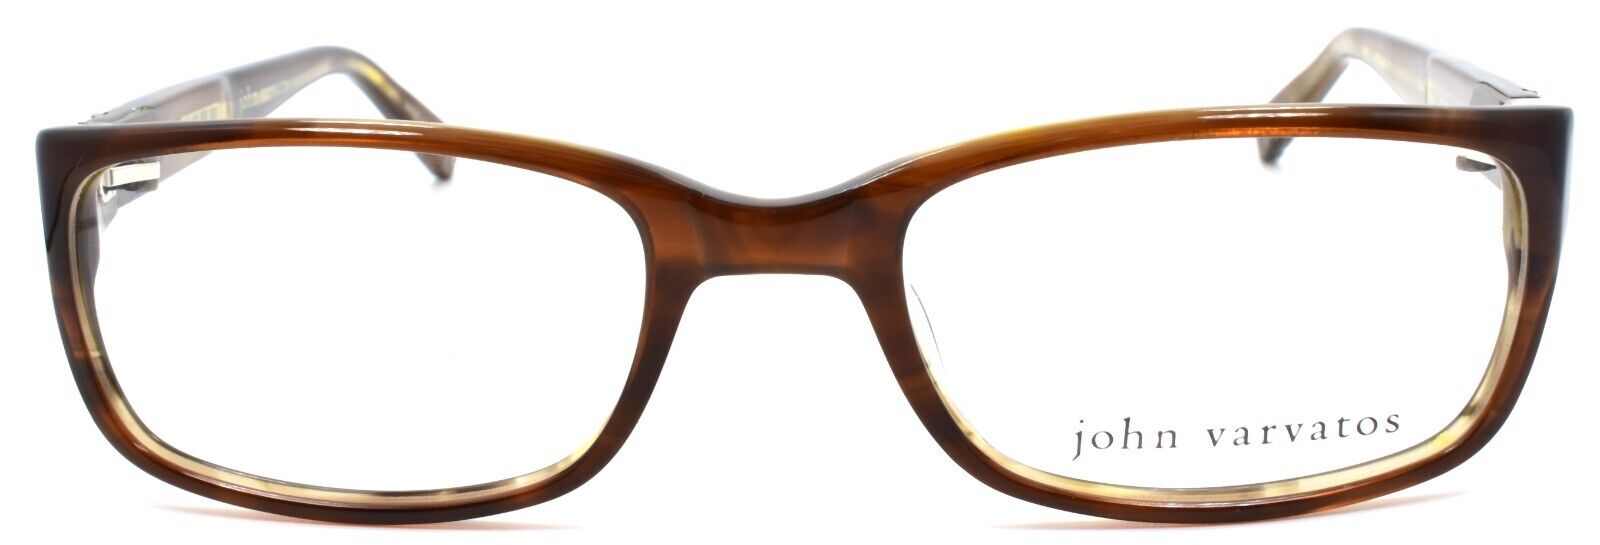 2-John Varvatos V344 Men's Eyeglasses Frames 51-19-140 Brown Japan-751286222210-IKSpecs